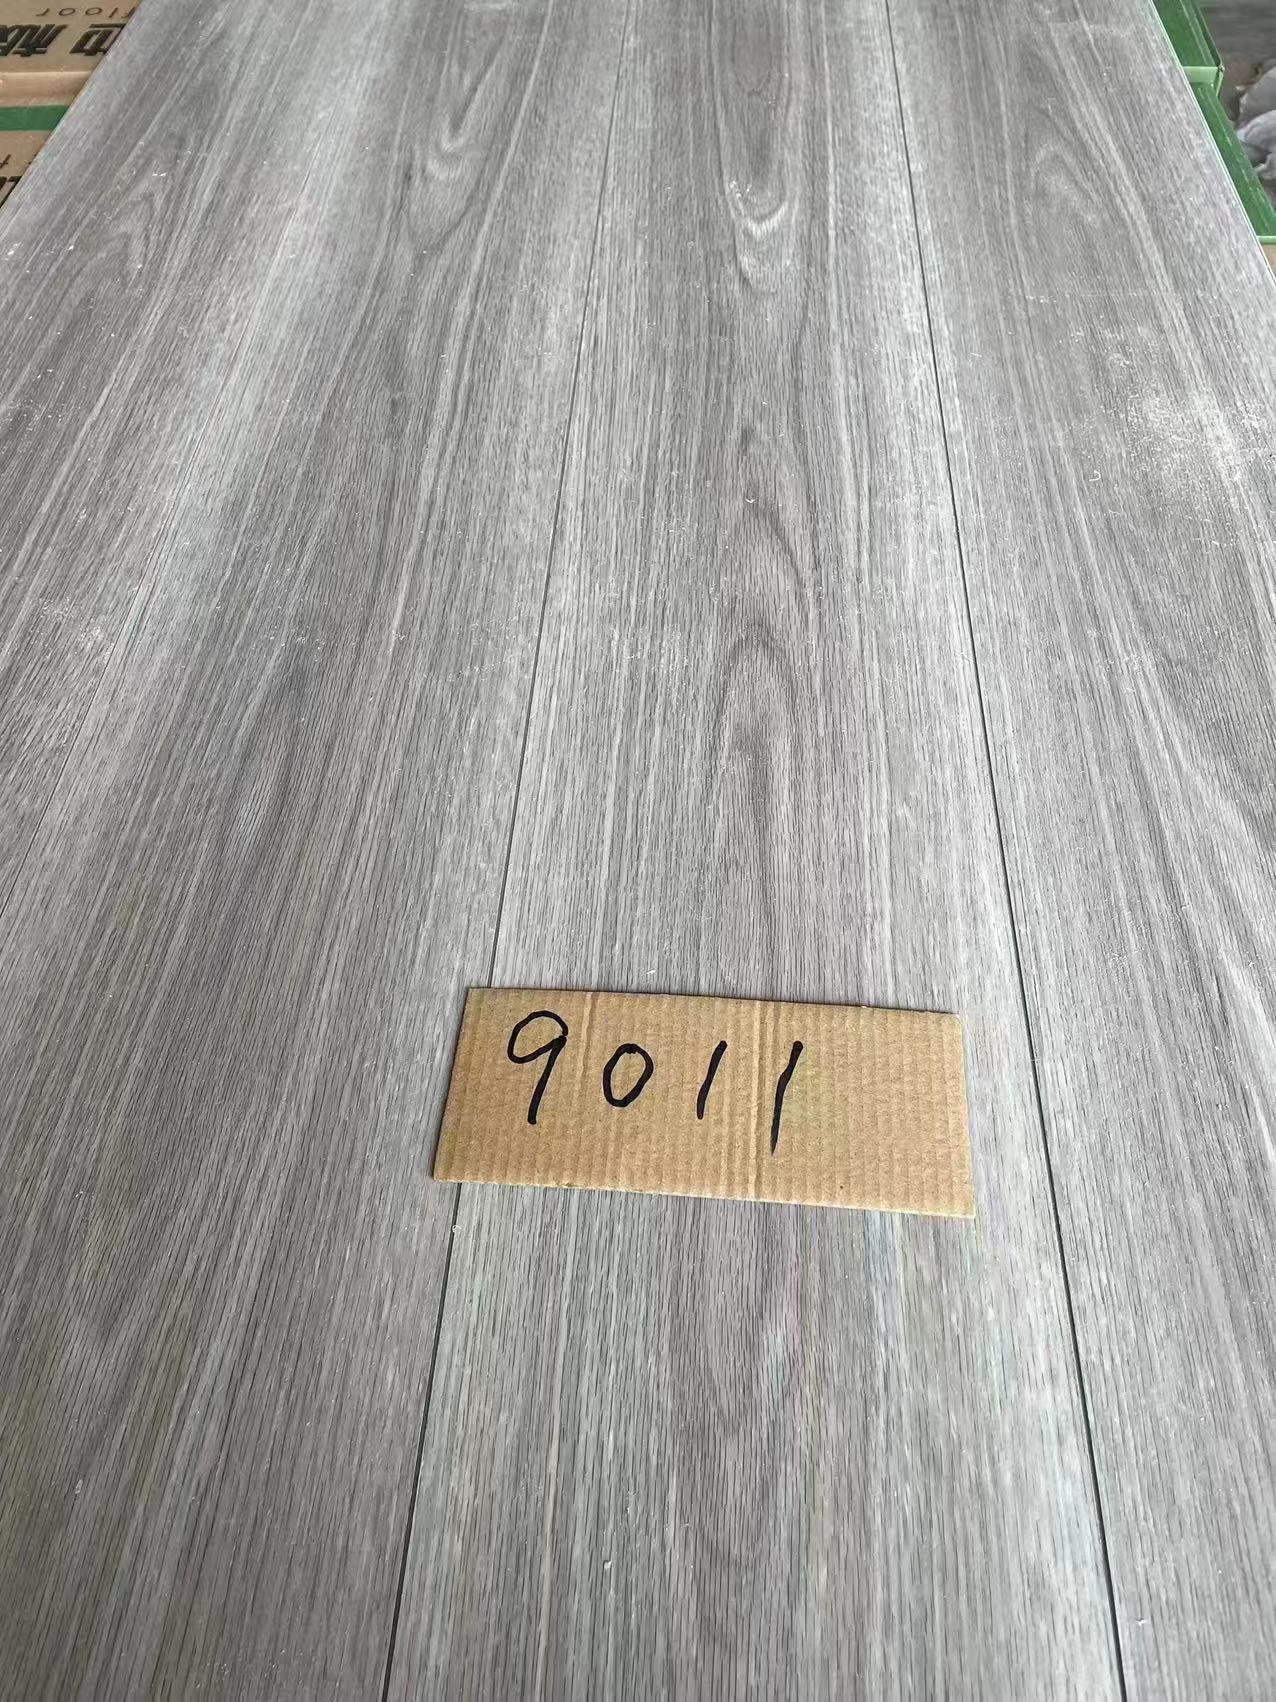 石塑地板spc锁扣地板卡扣式环保家用卧室地板防水石晶地板PVC地板 石塑地板SPC地板耐磨